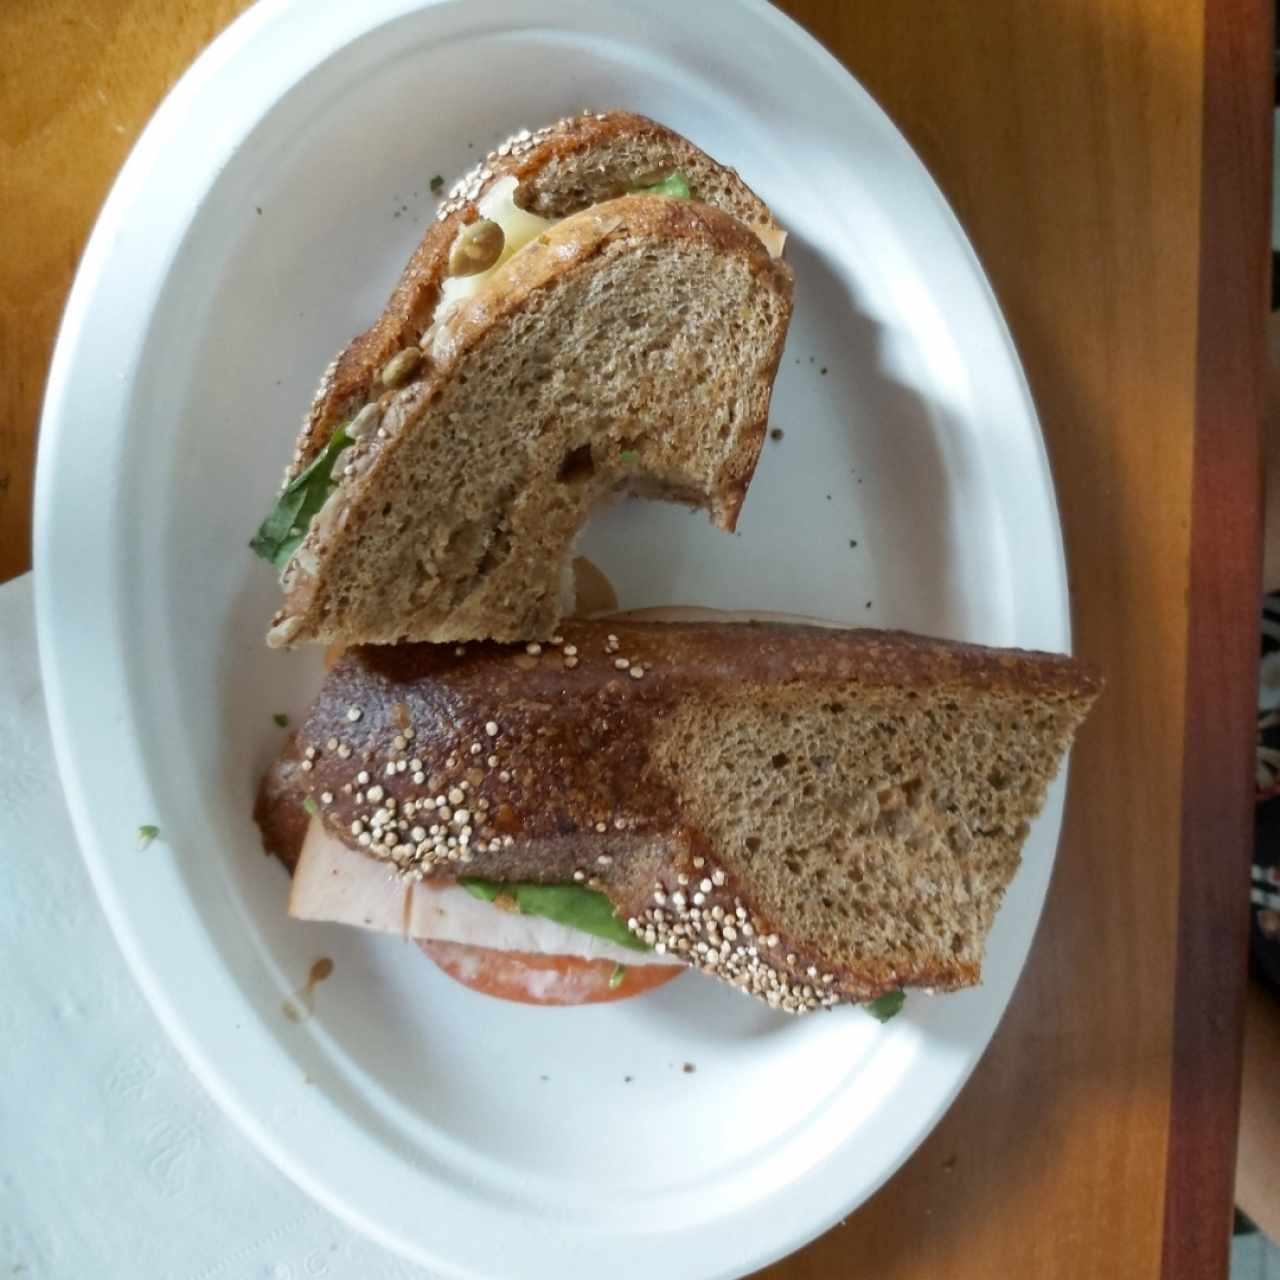 sándwich de pavo